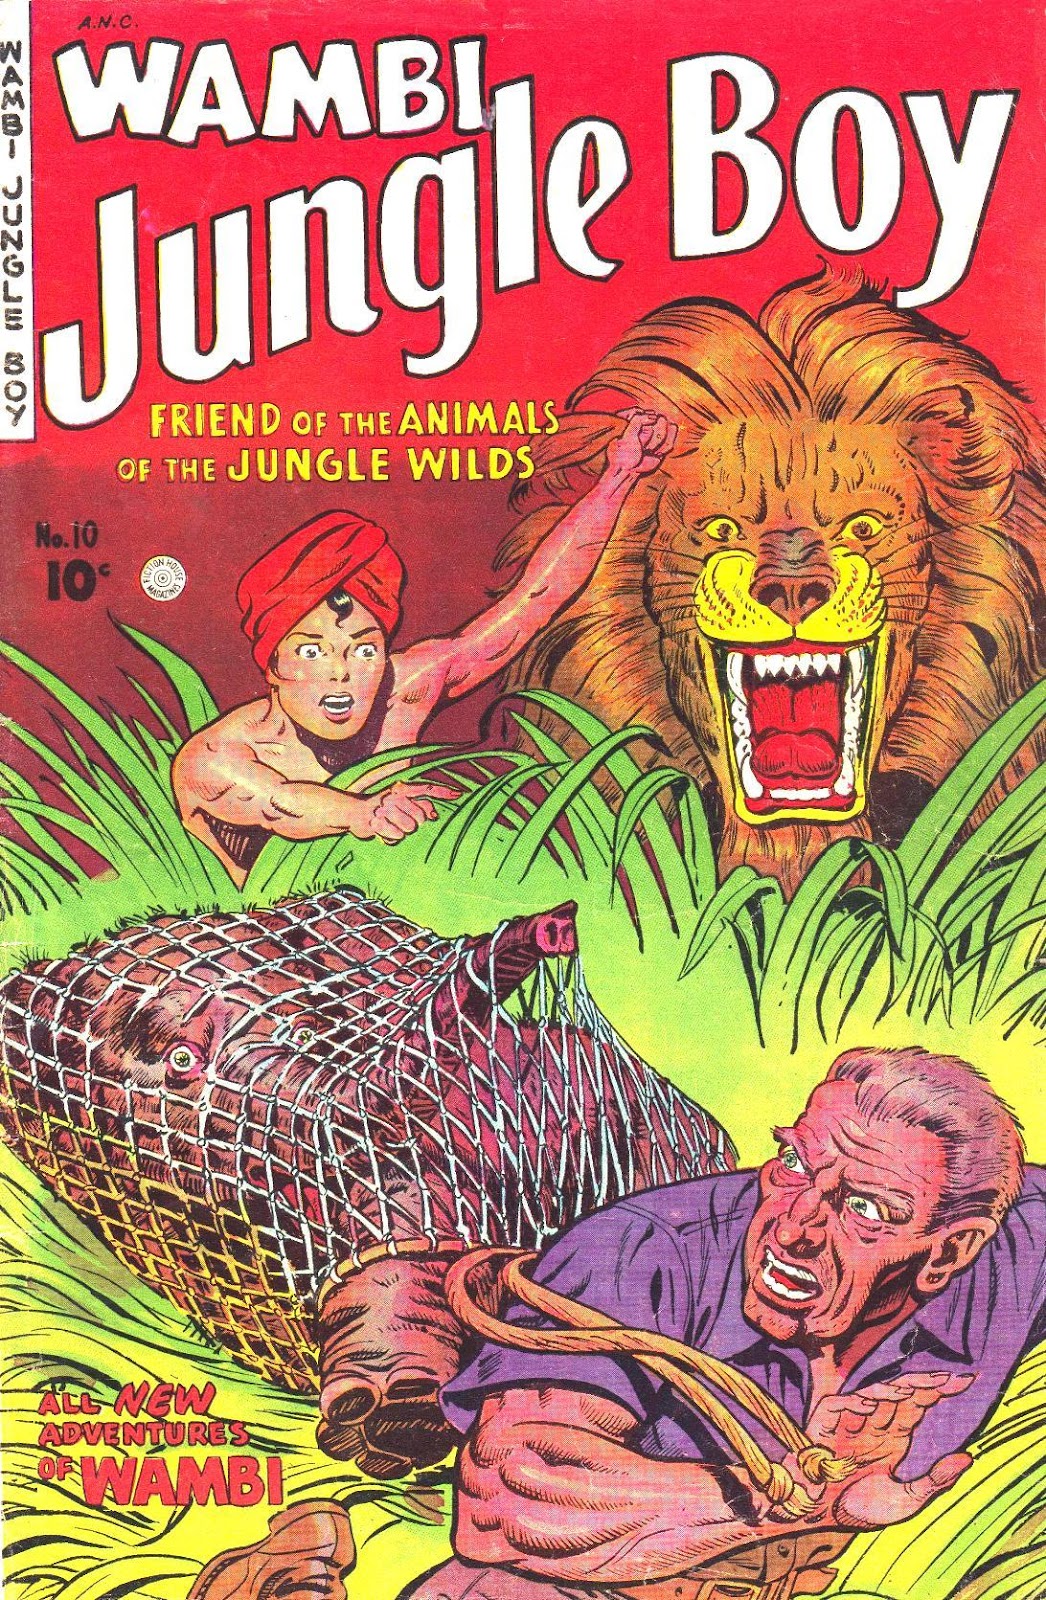 Wambi Jungle Boy issue 10 - Page 1